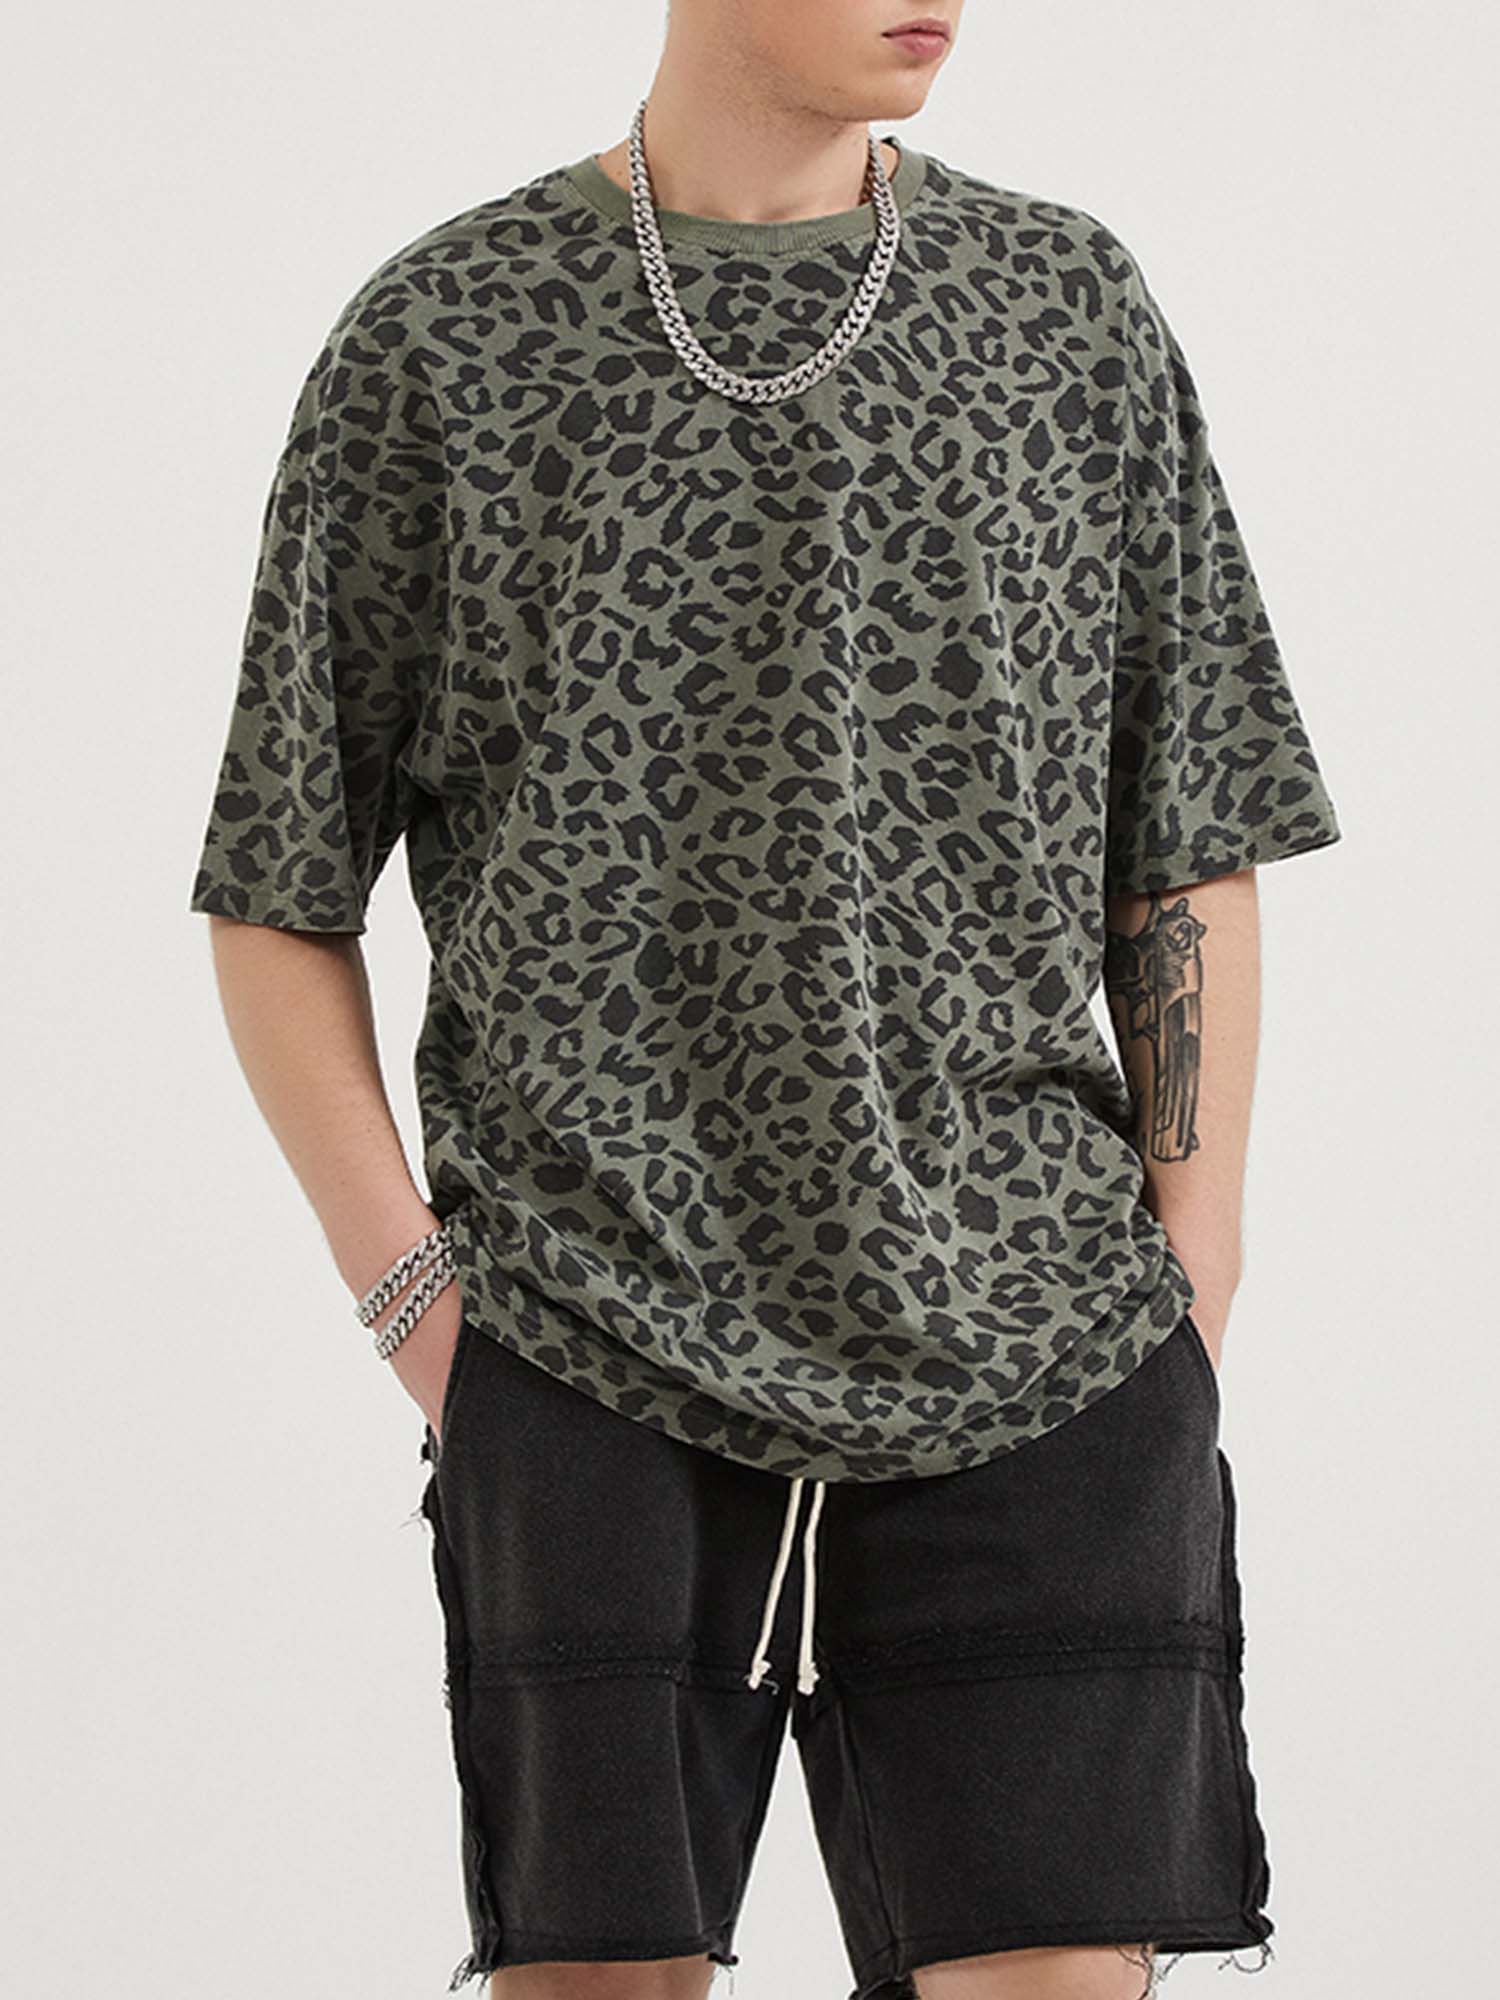 JUSTNOTAG T-shirt à manches courtes 100% coton imprimé léopard gris foncé